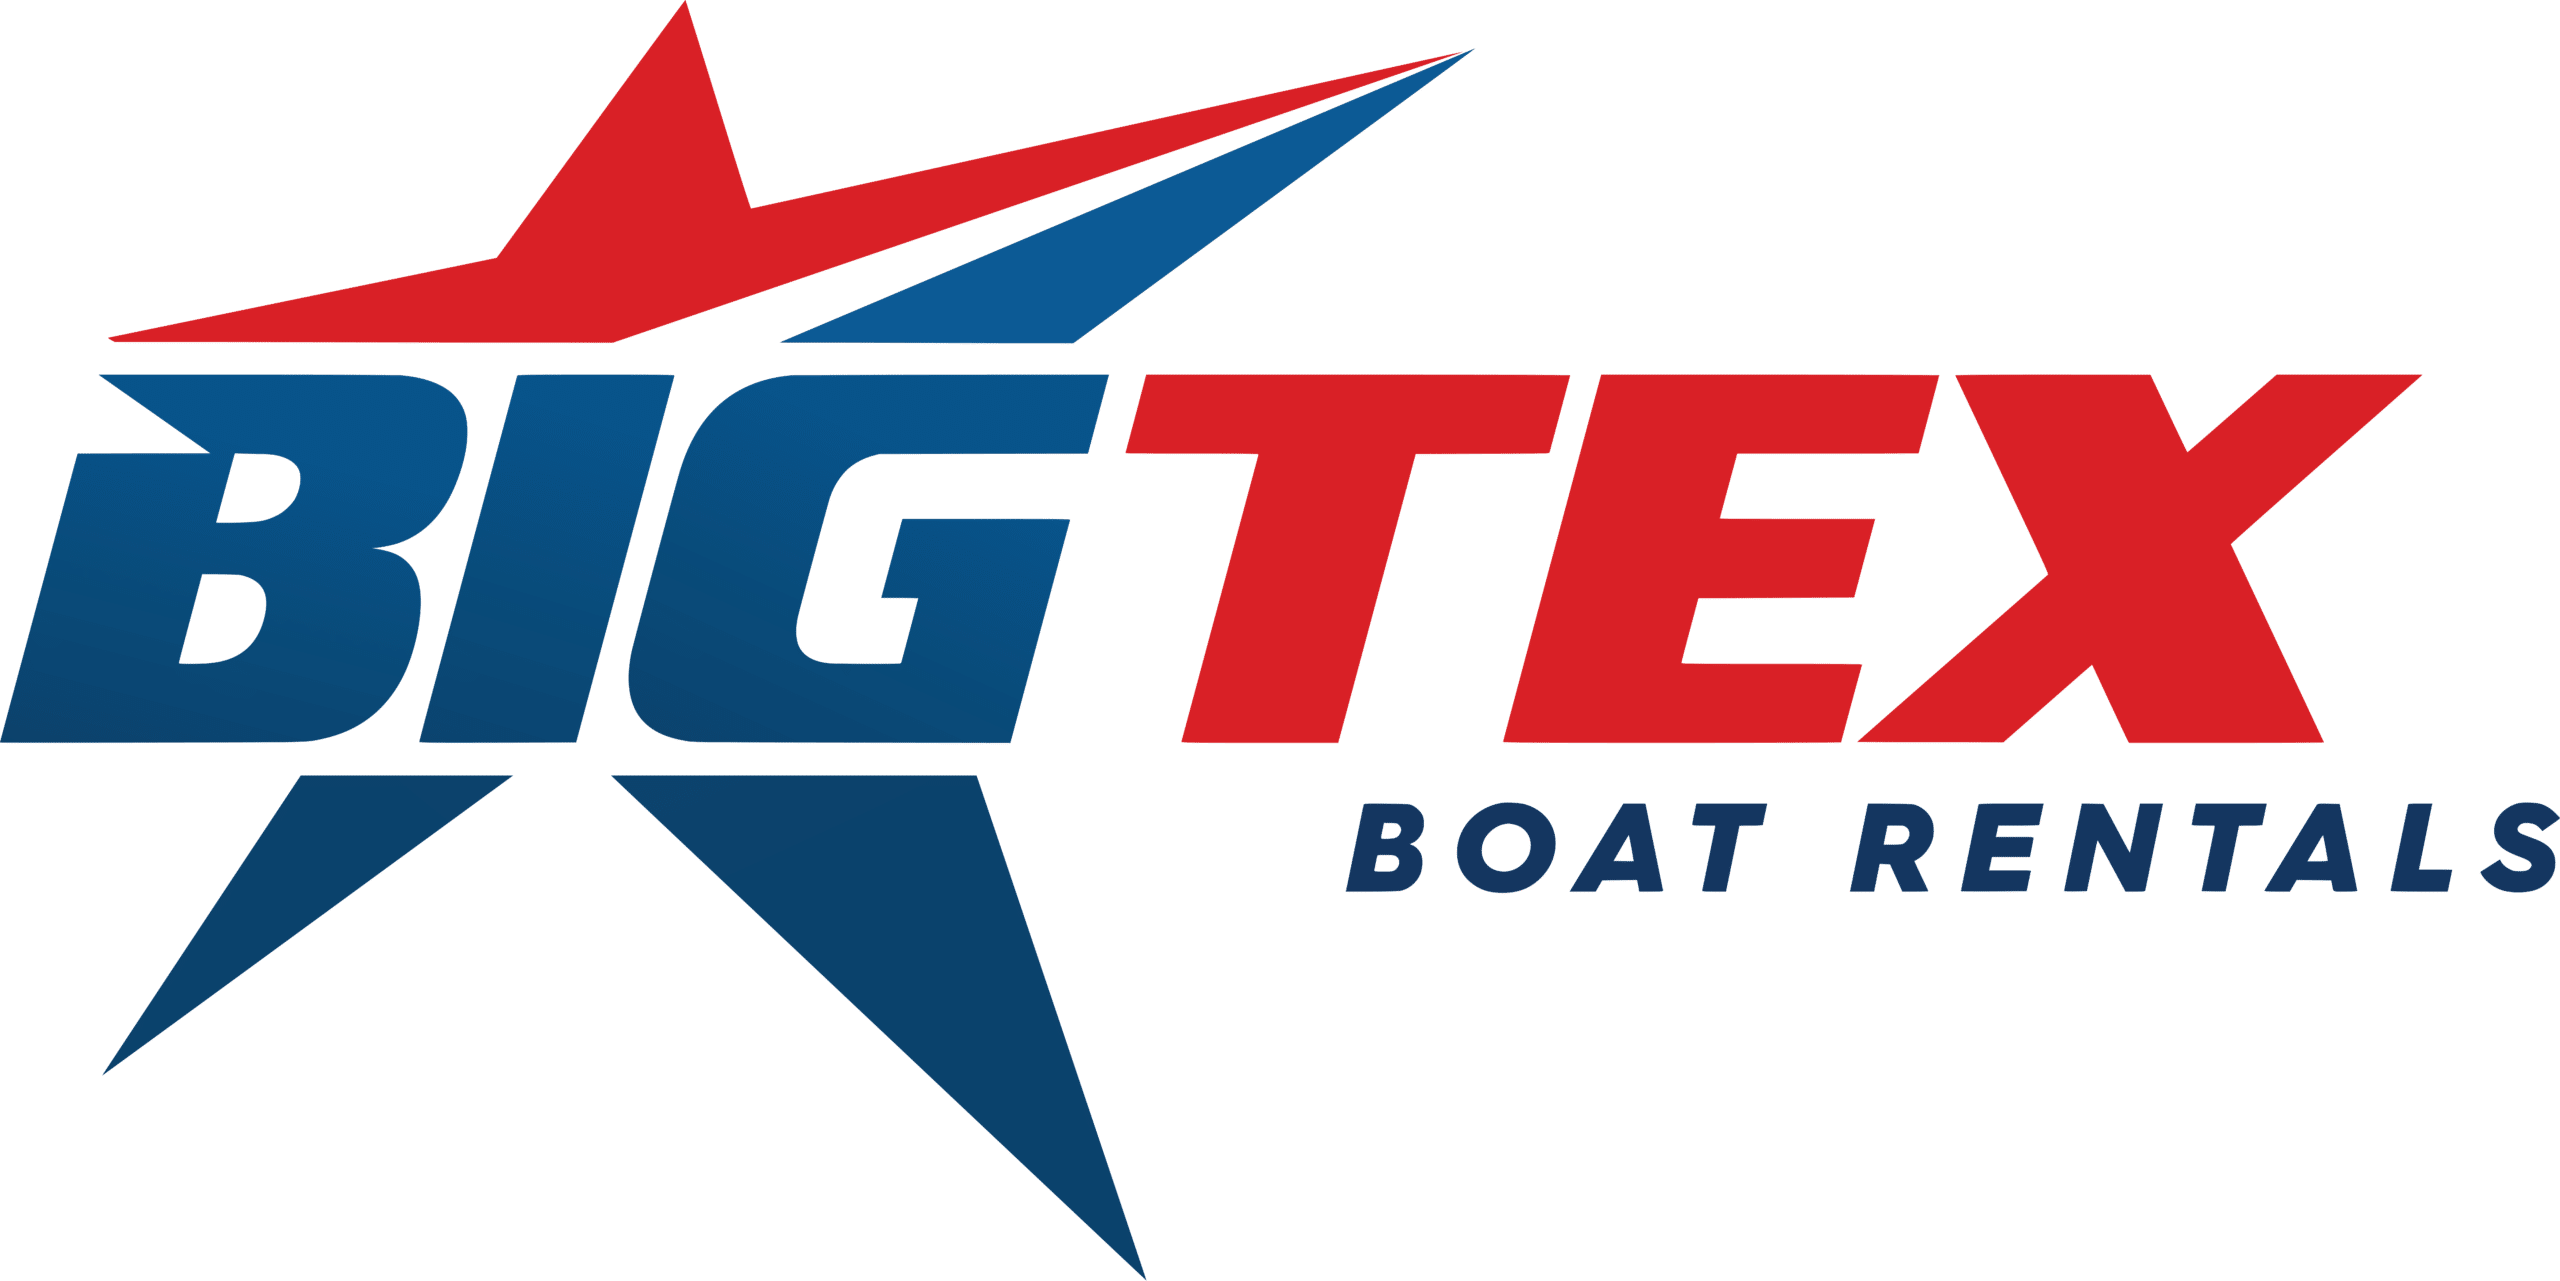 rent sailboat lake travis